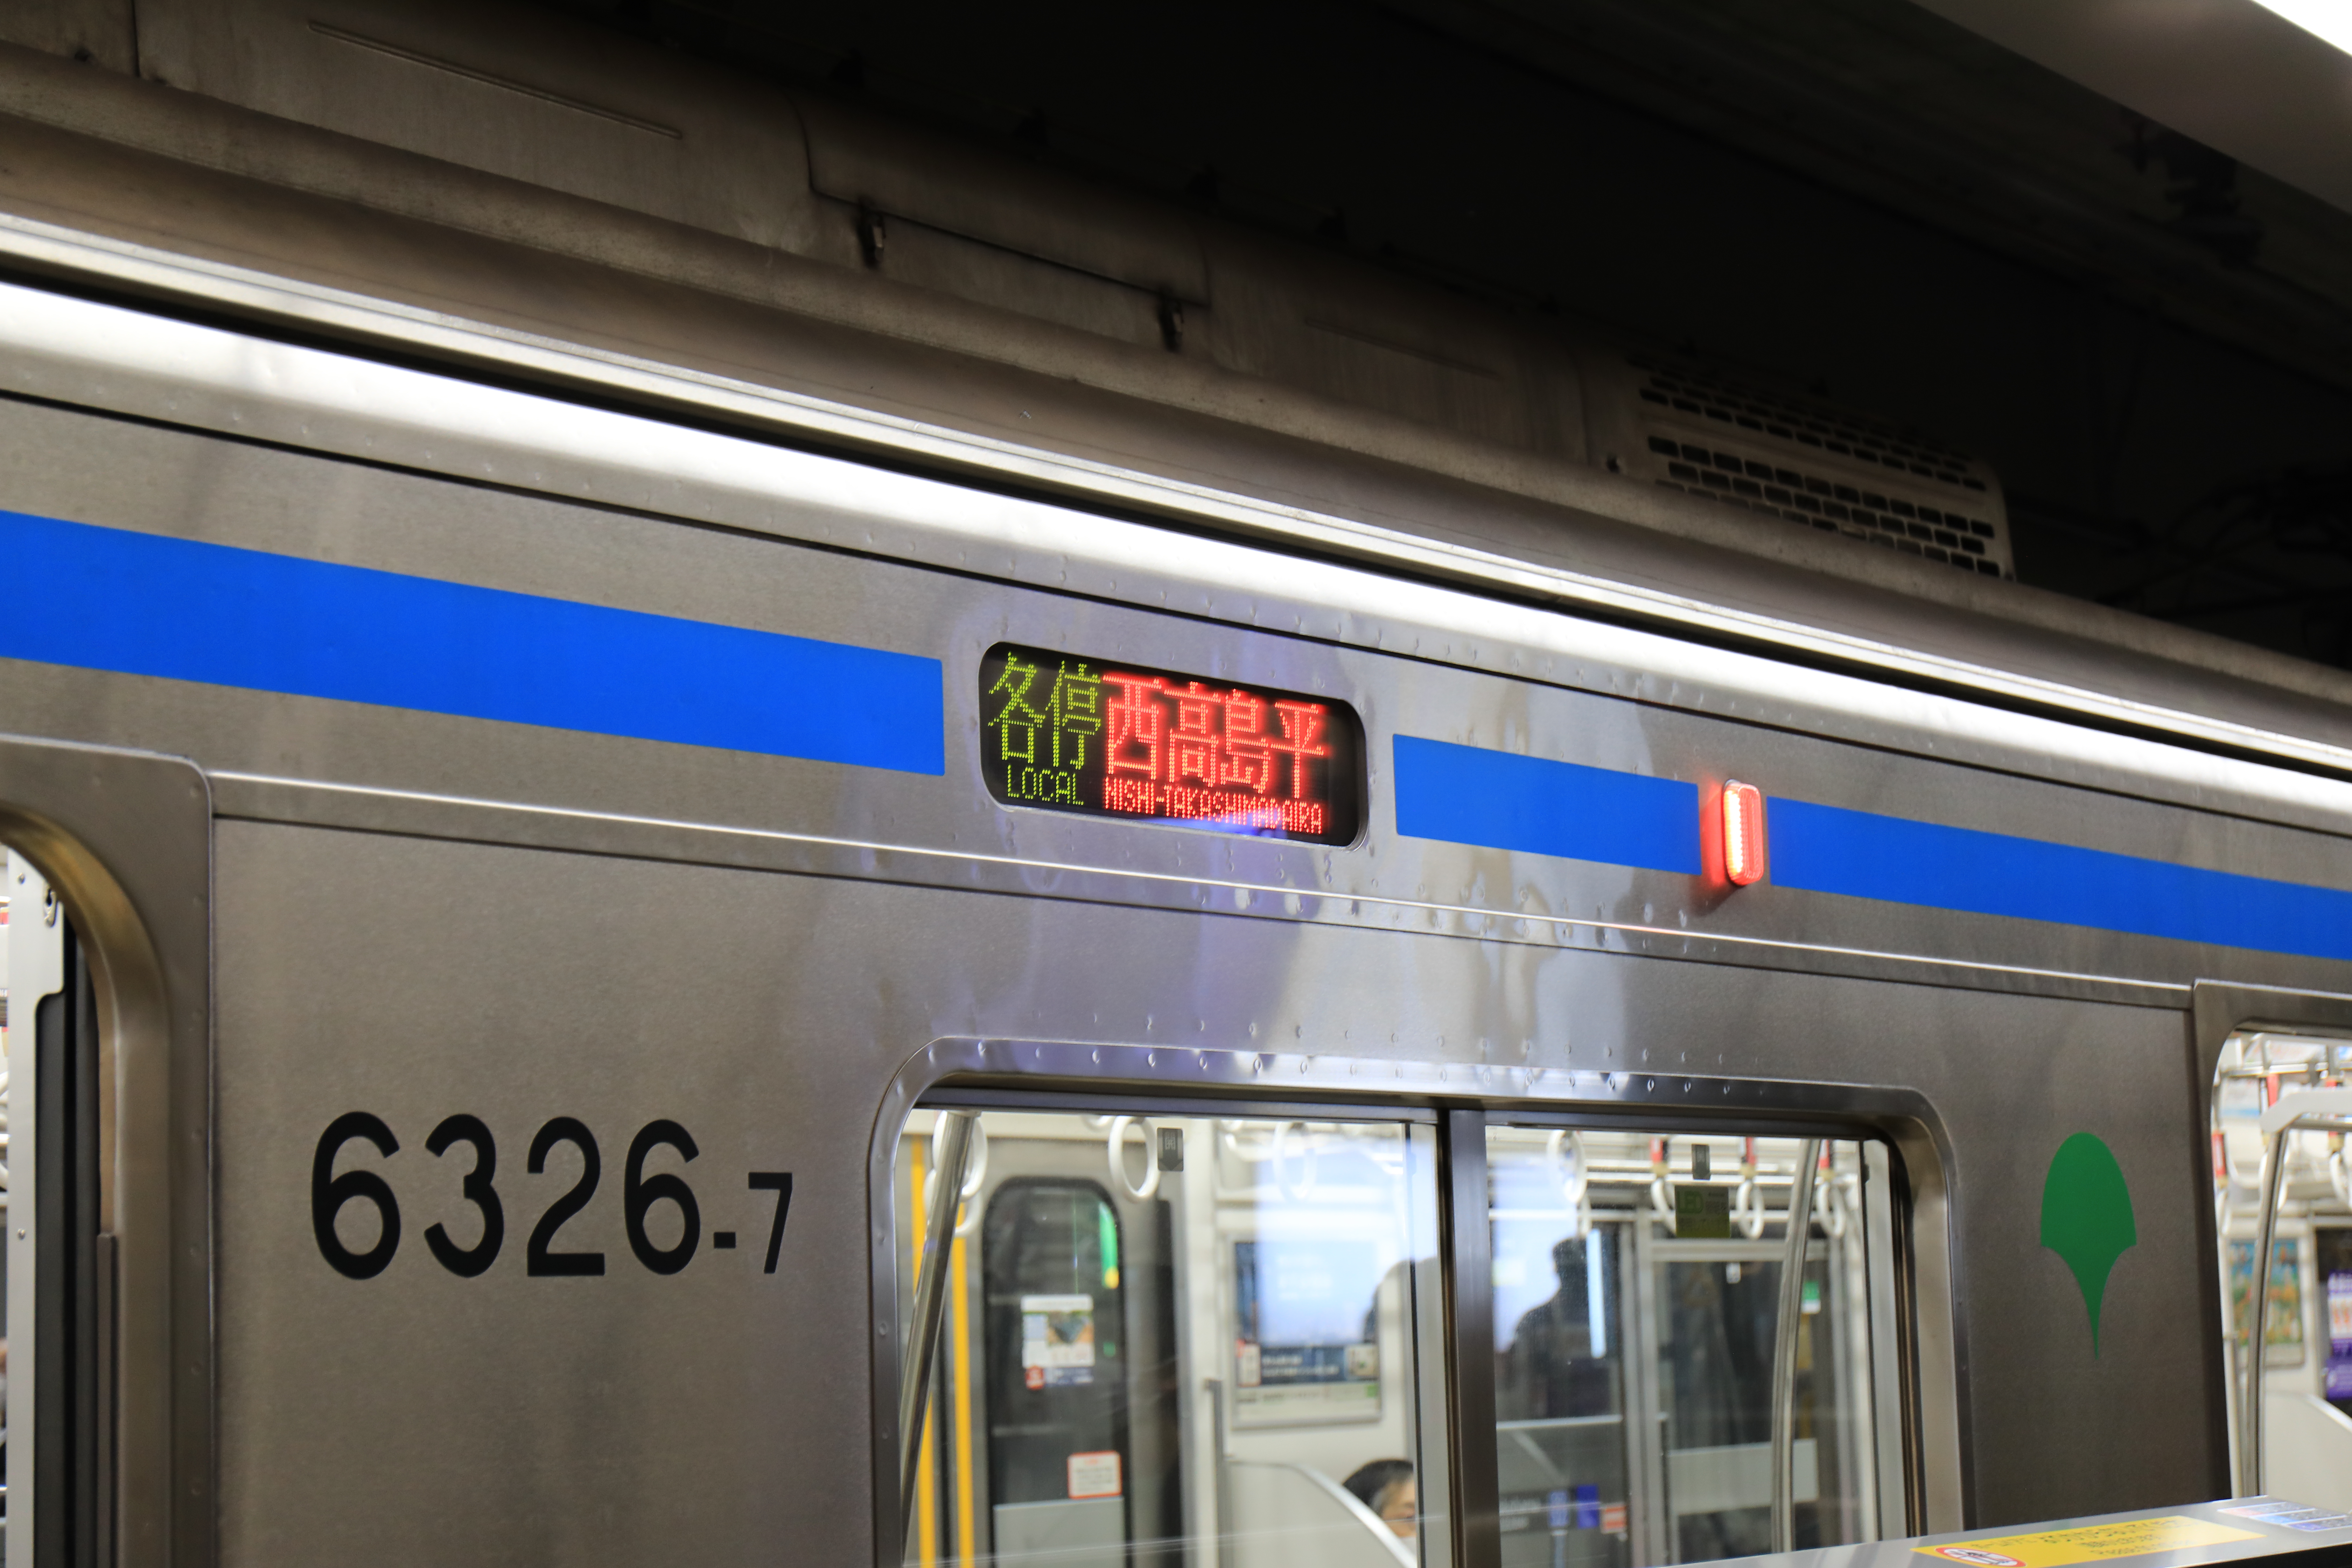 「各駅停車西高島平行」の電光掲示板